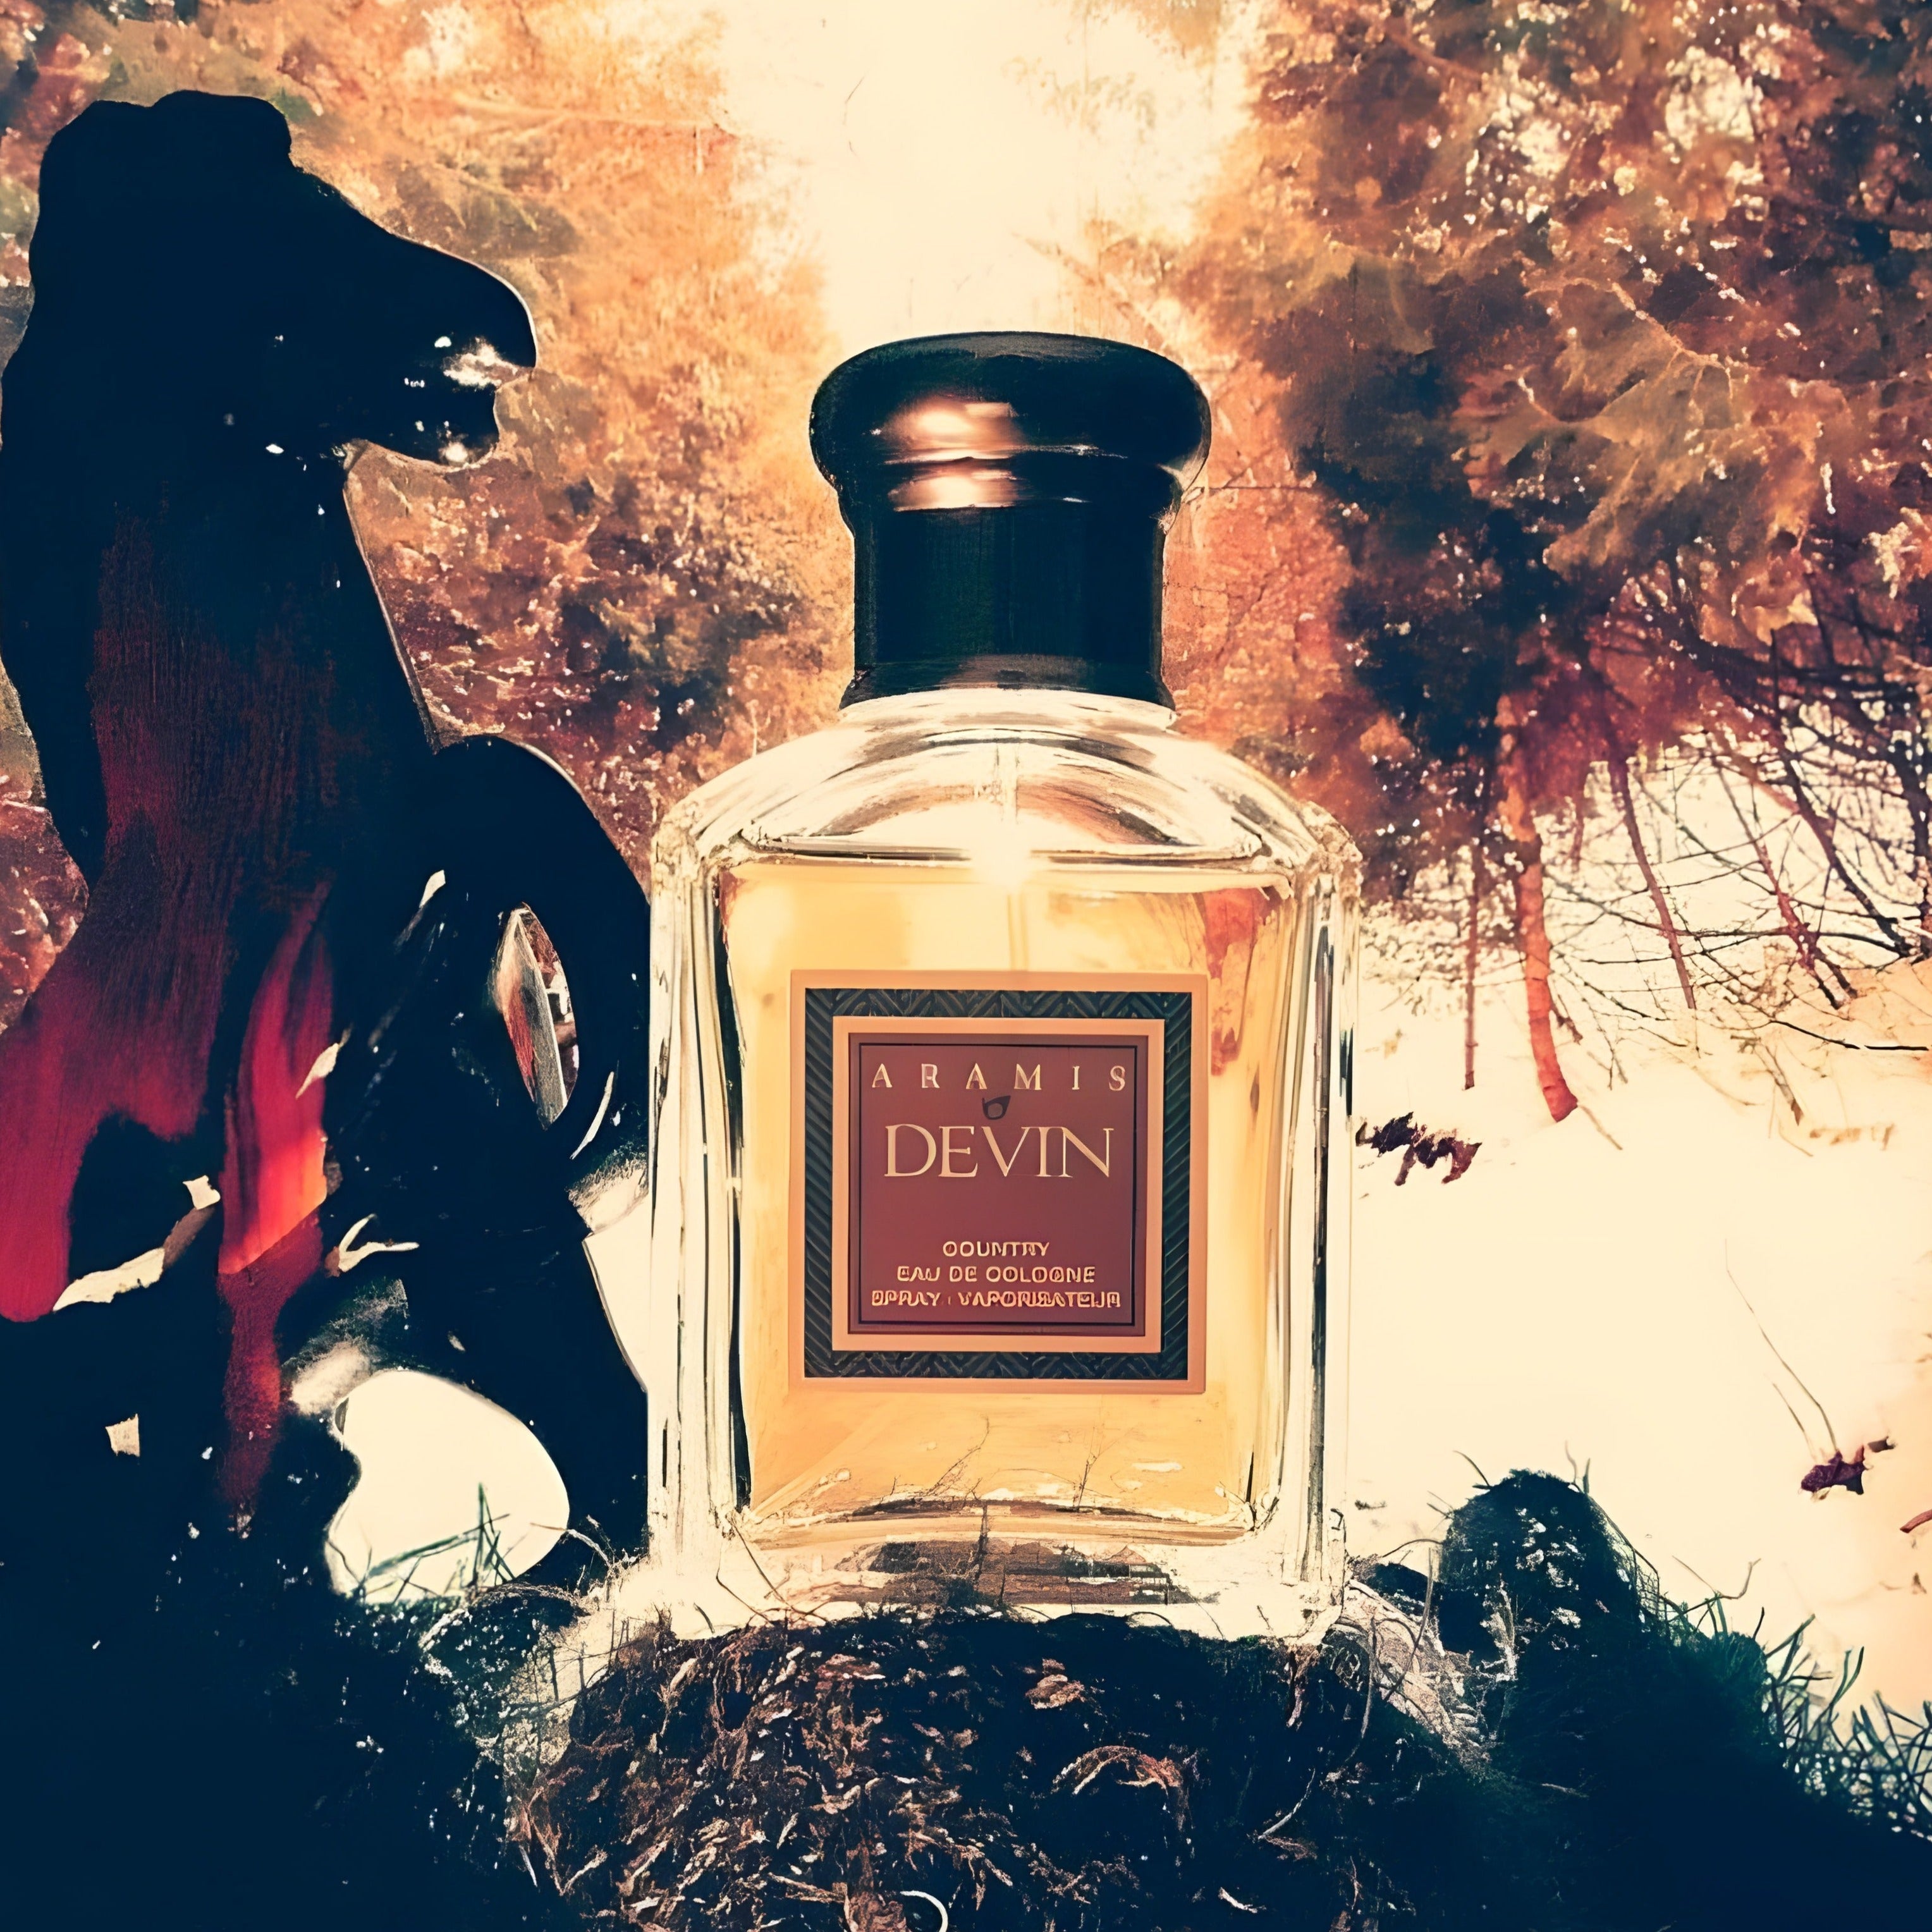 Aramis Devin Country Eau De Cologne | My Perfume Shop Australia